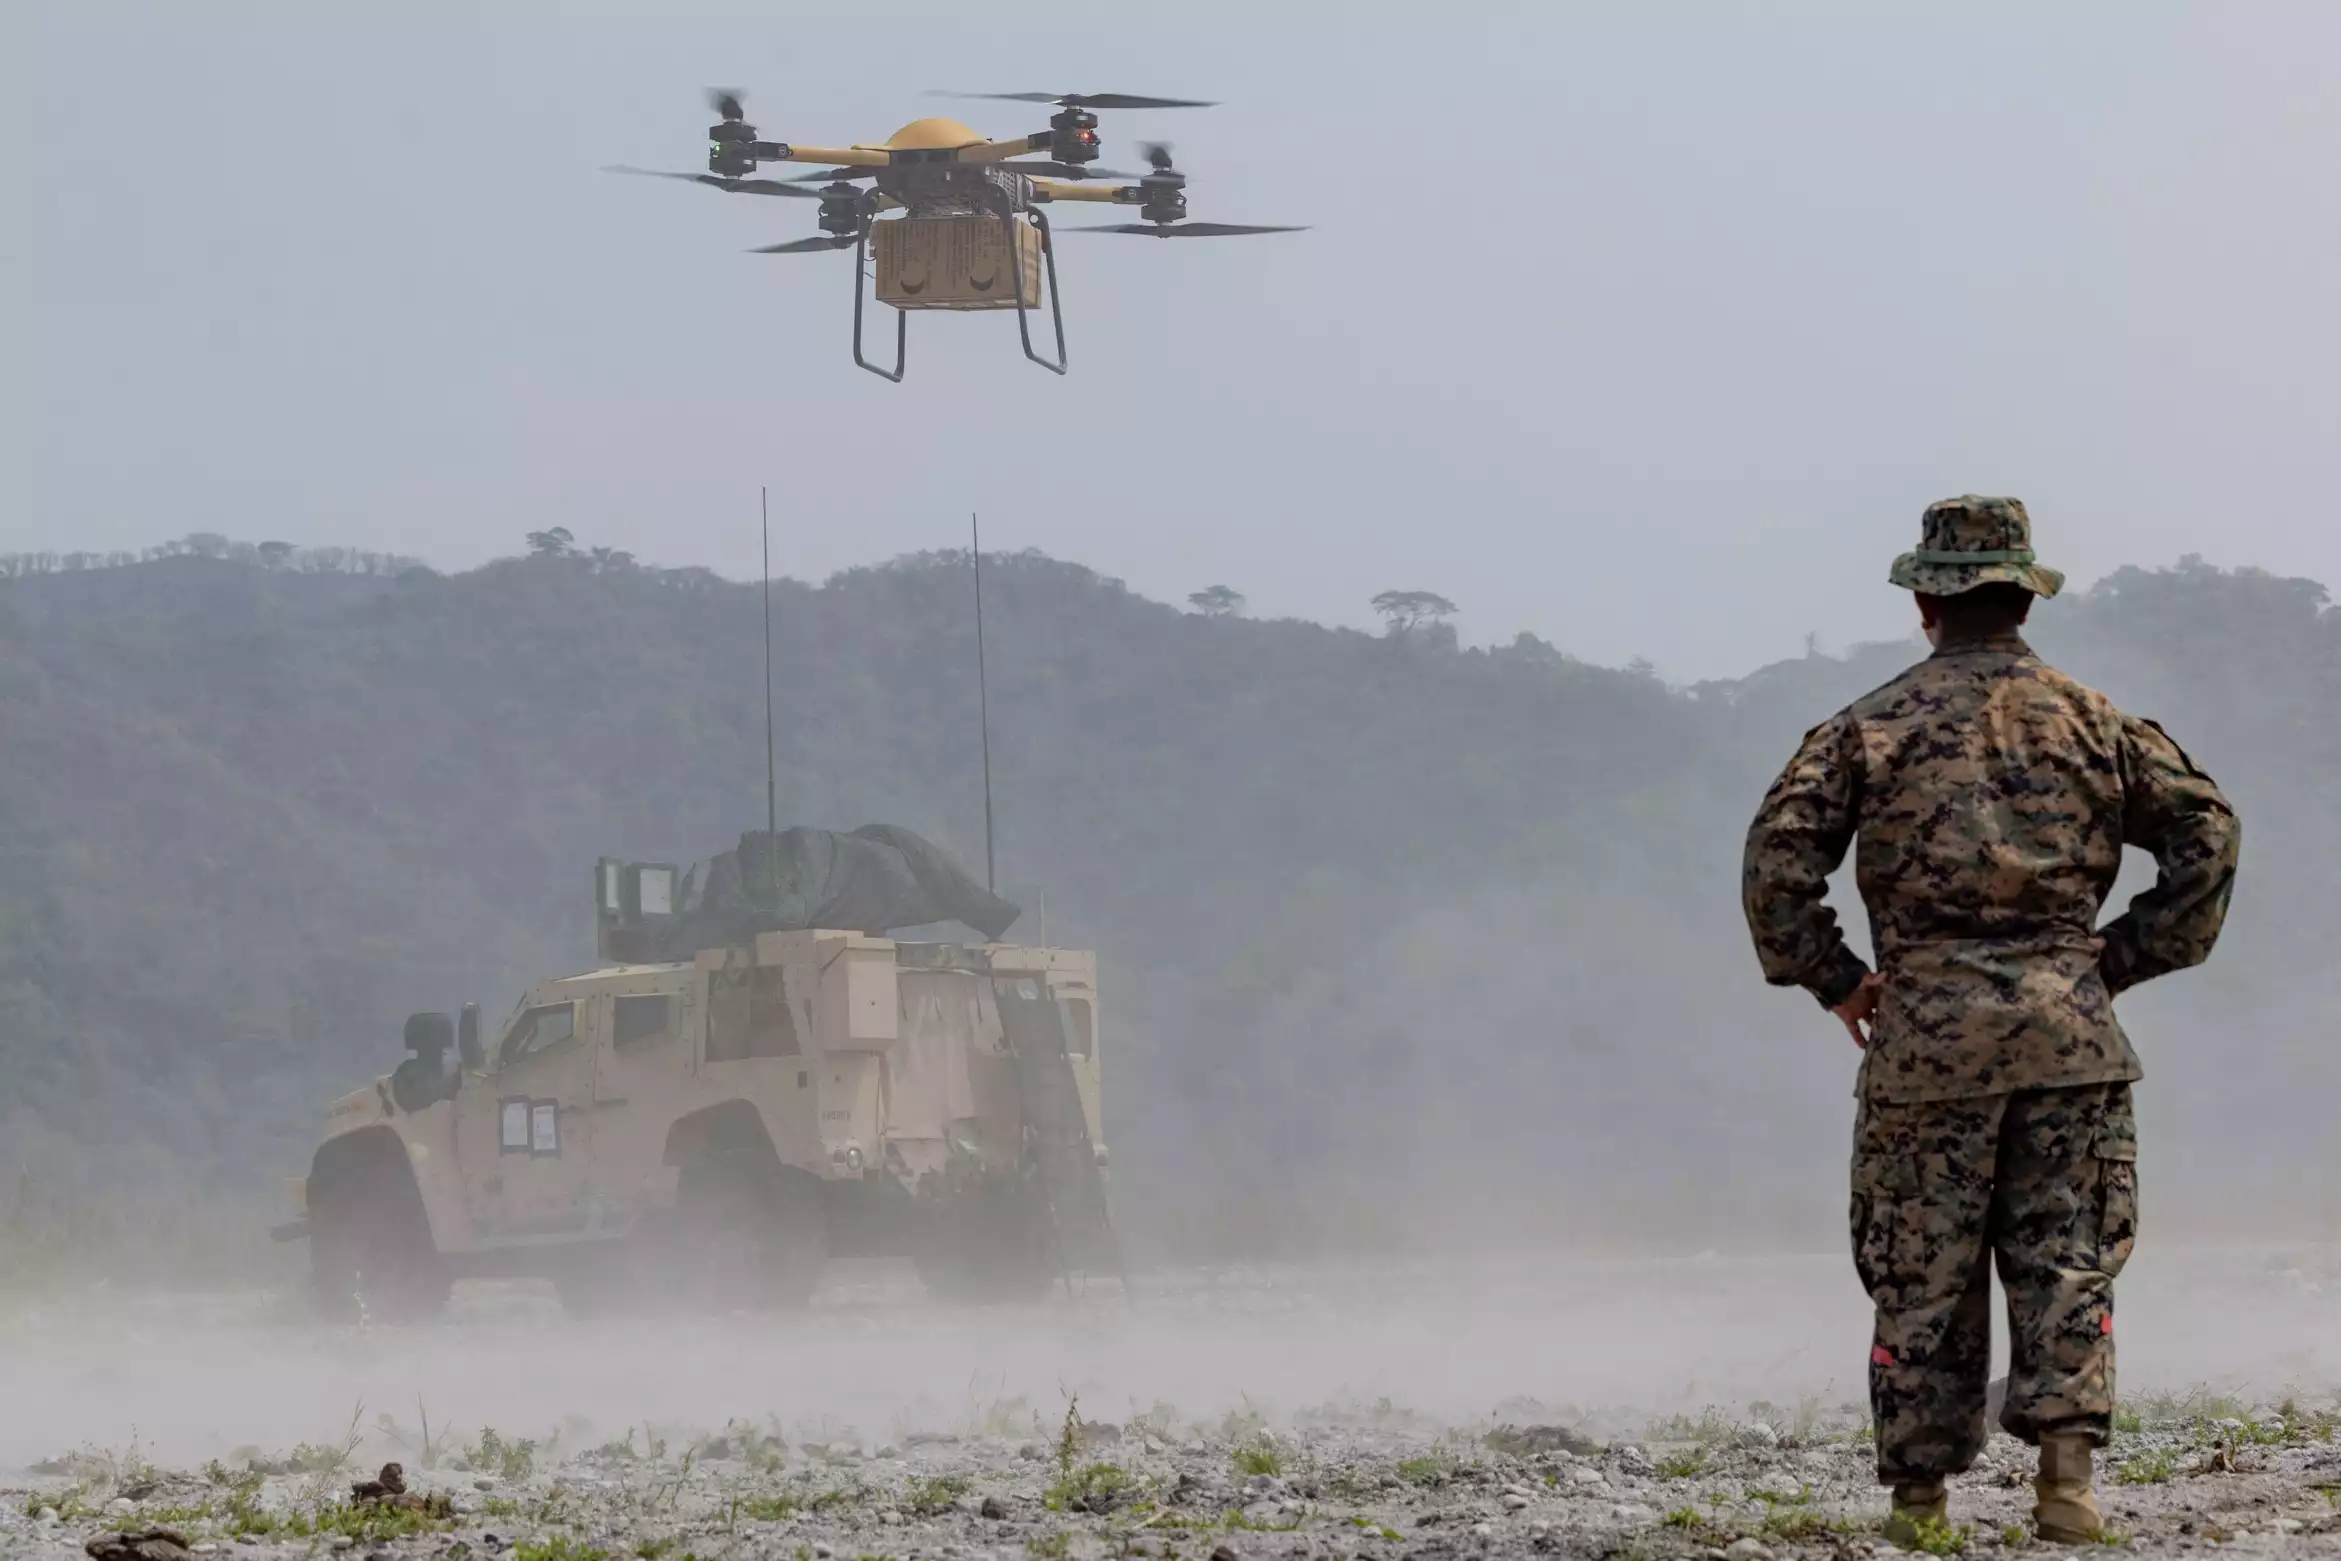 L'exercice Balikatan 23 fut l'occasion pour le Corps des Marines de tester le concept de drone de transport à l'aide du T-150 (TRV-50) de Malloy.